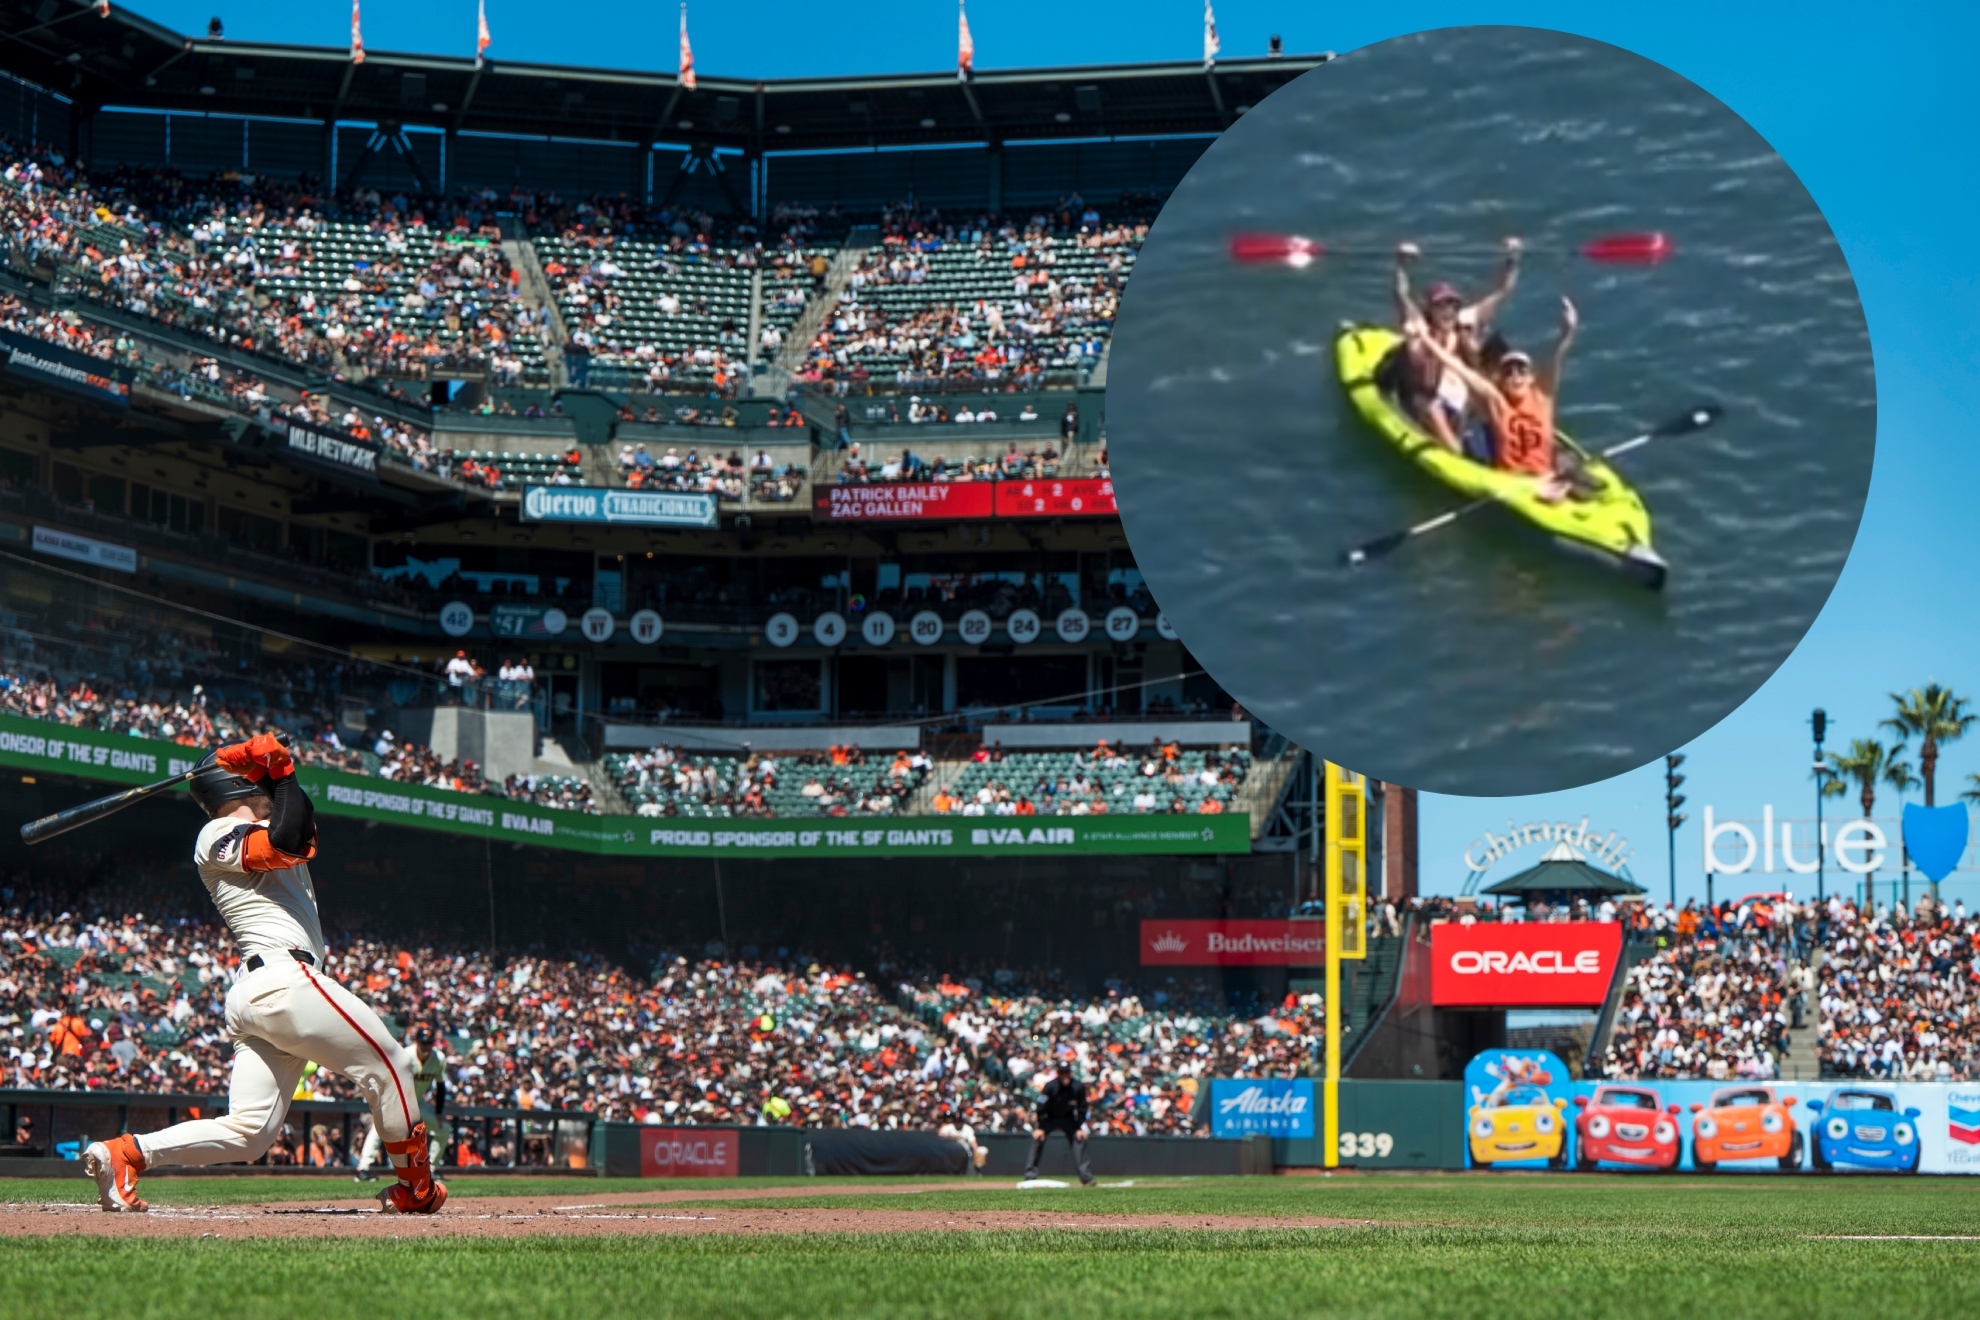 El 'home run' de la estrella de los San Francisco Giants, Patrick Bailey, fue atrapado por un aficionado en un kayak después de sacar la pelota del estadio.